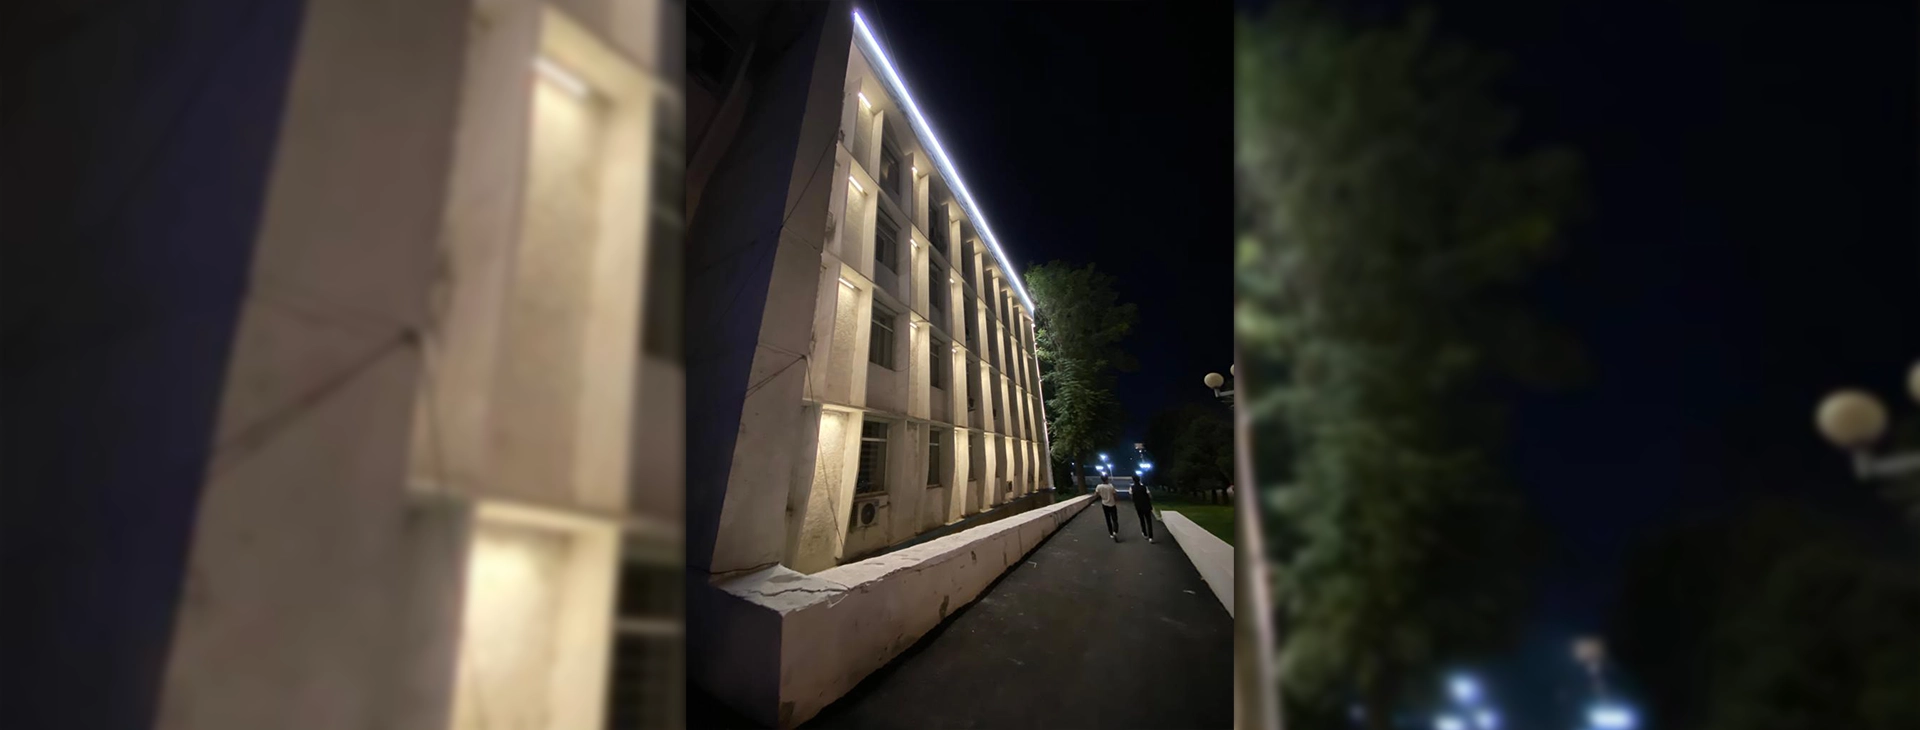 Поставка светильников для освещения здания мэрии г. Ош